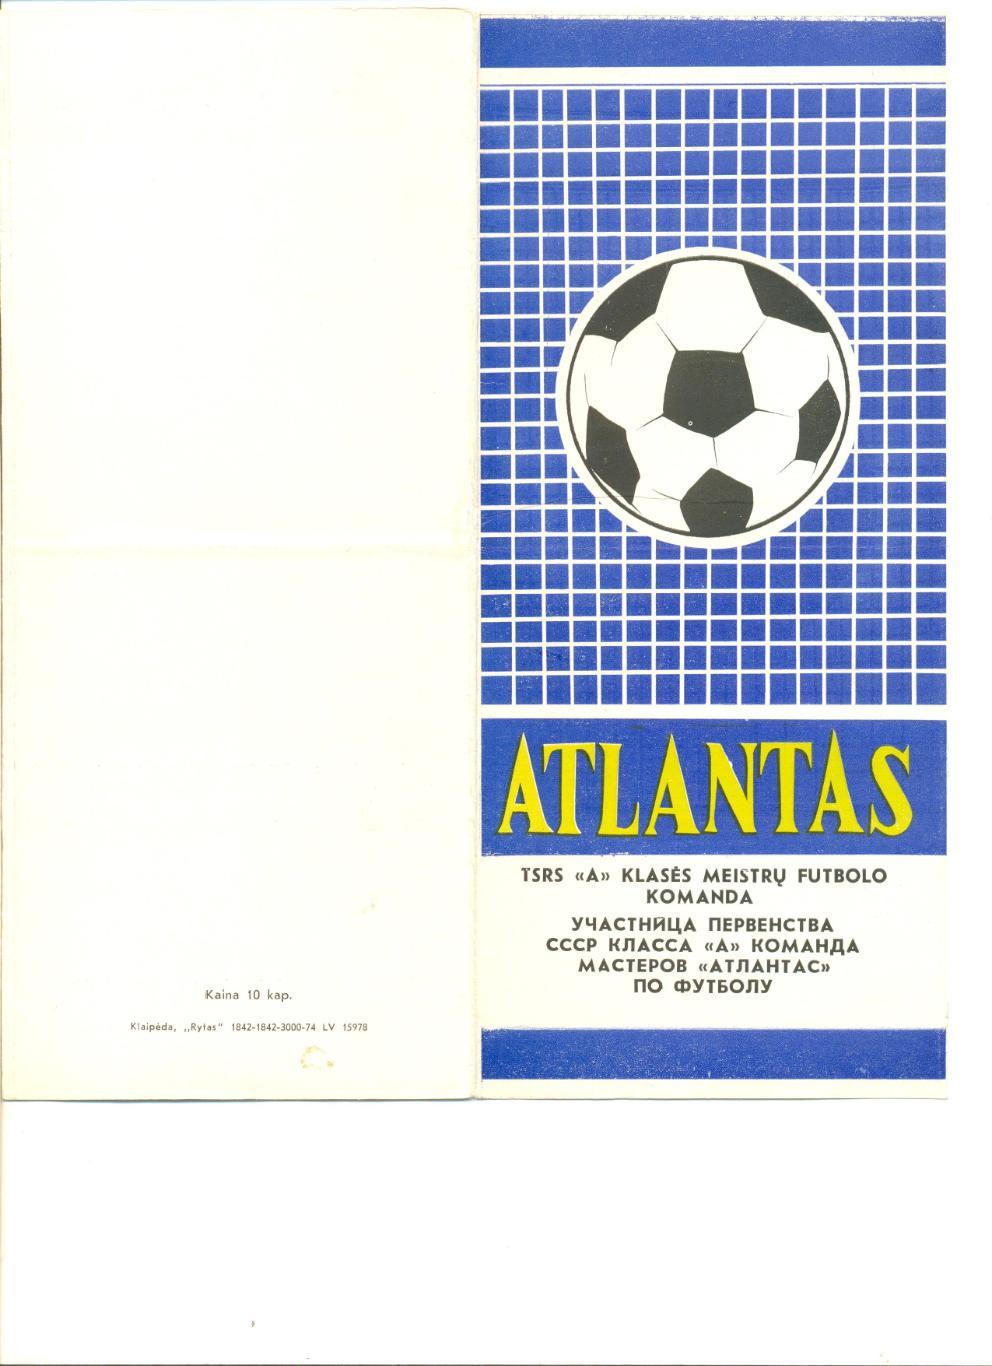 Буклет Атлантас Клайпеда - 1974 г. 10 стр. Фото игроков. Русский язык